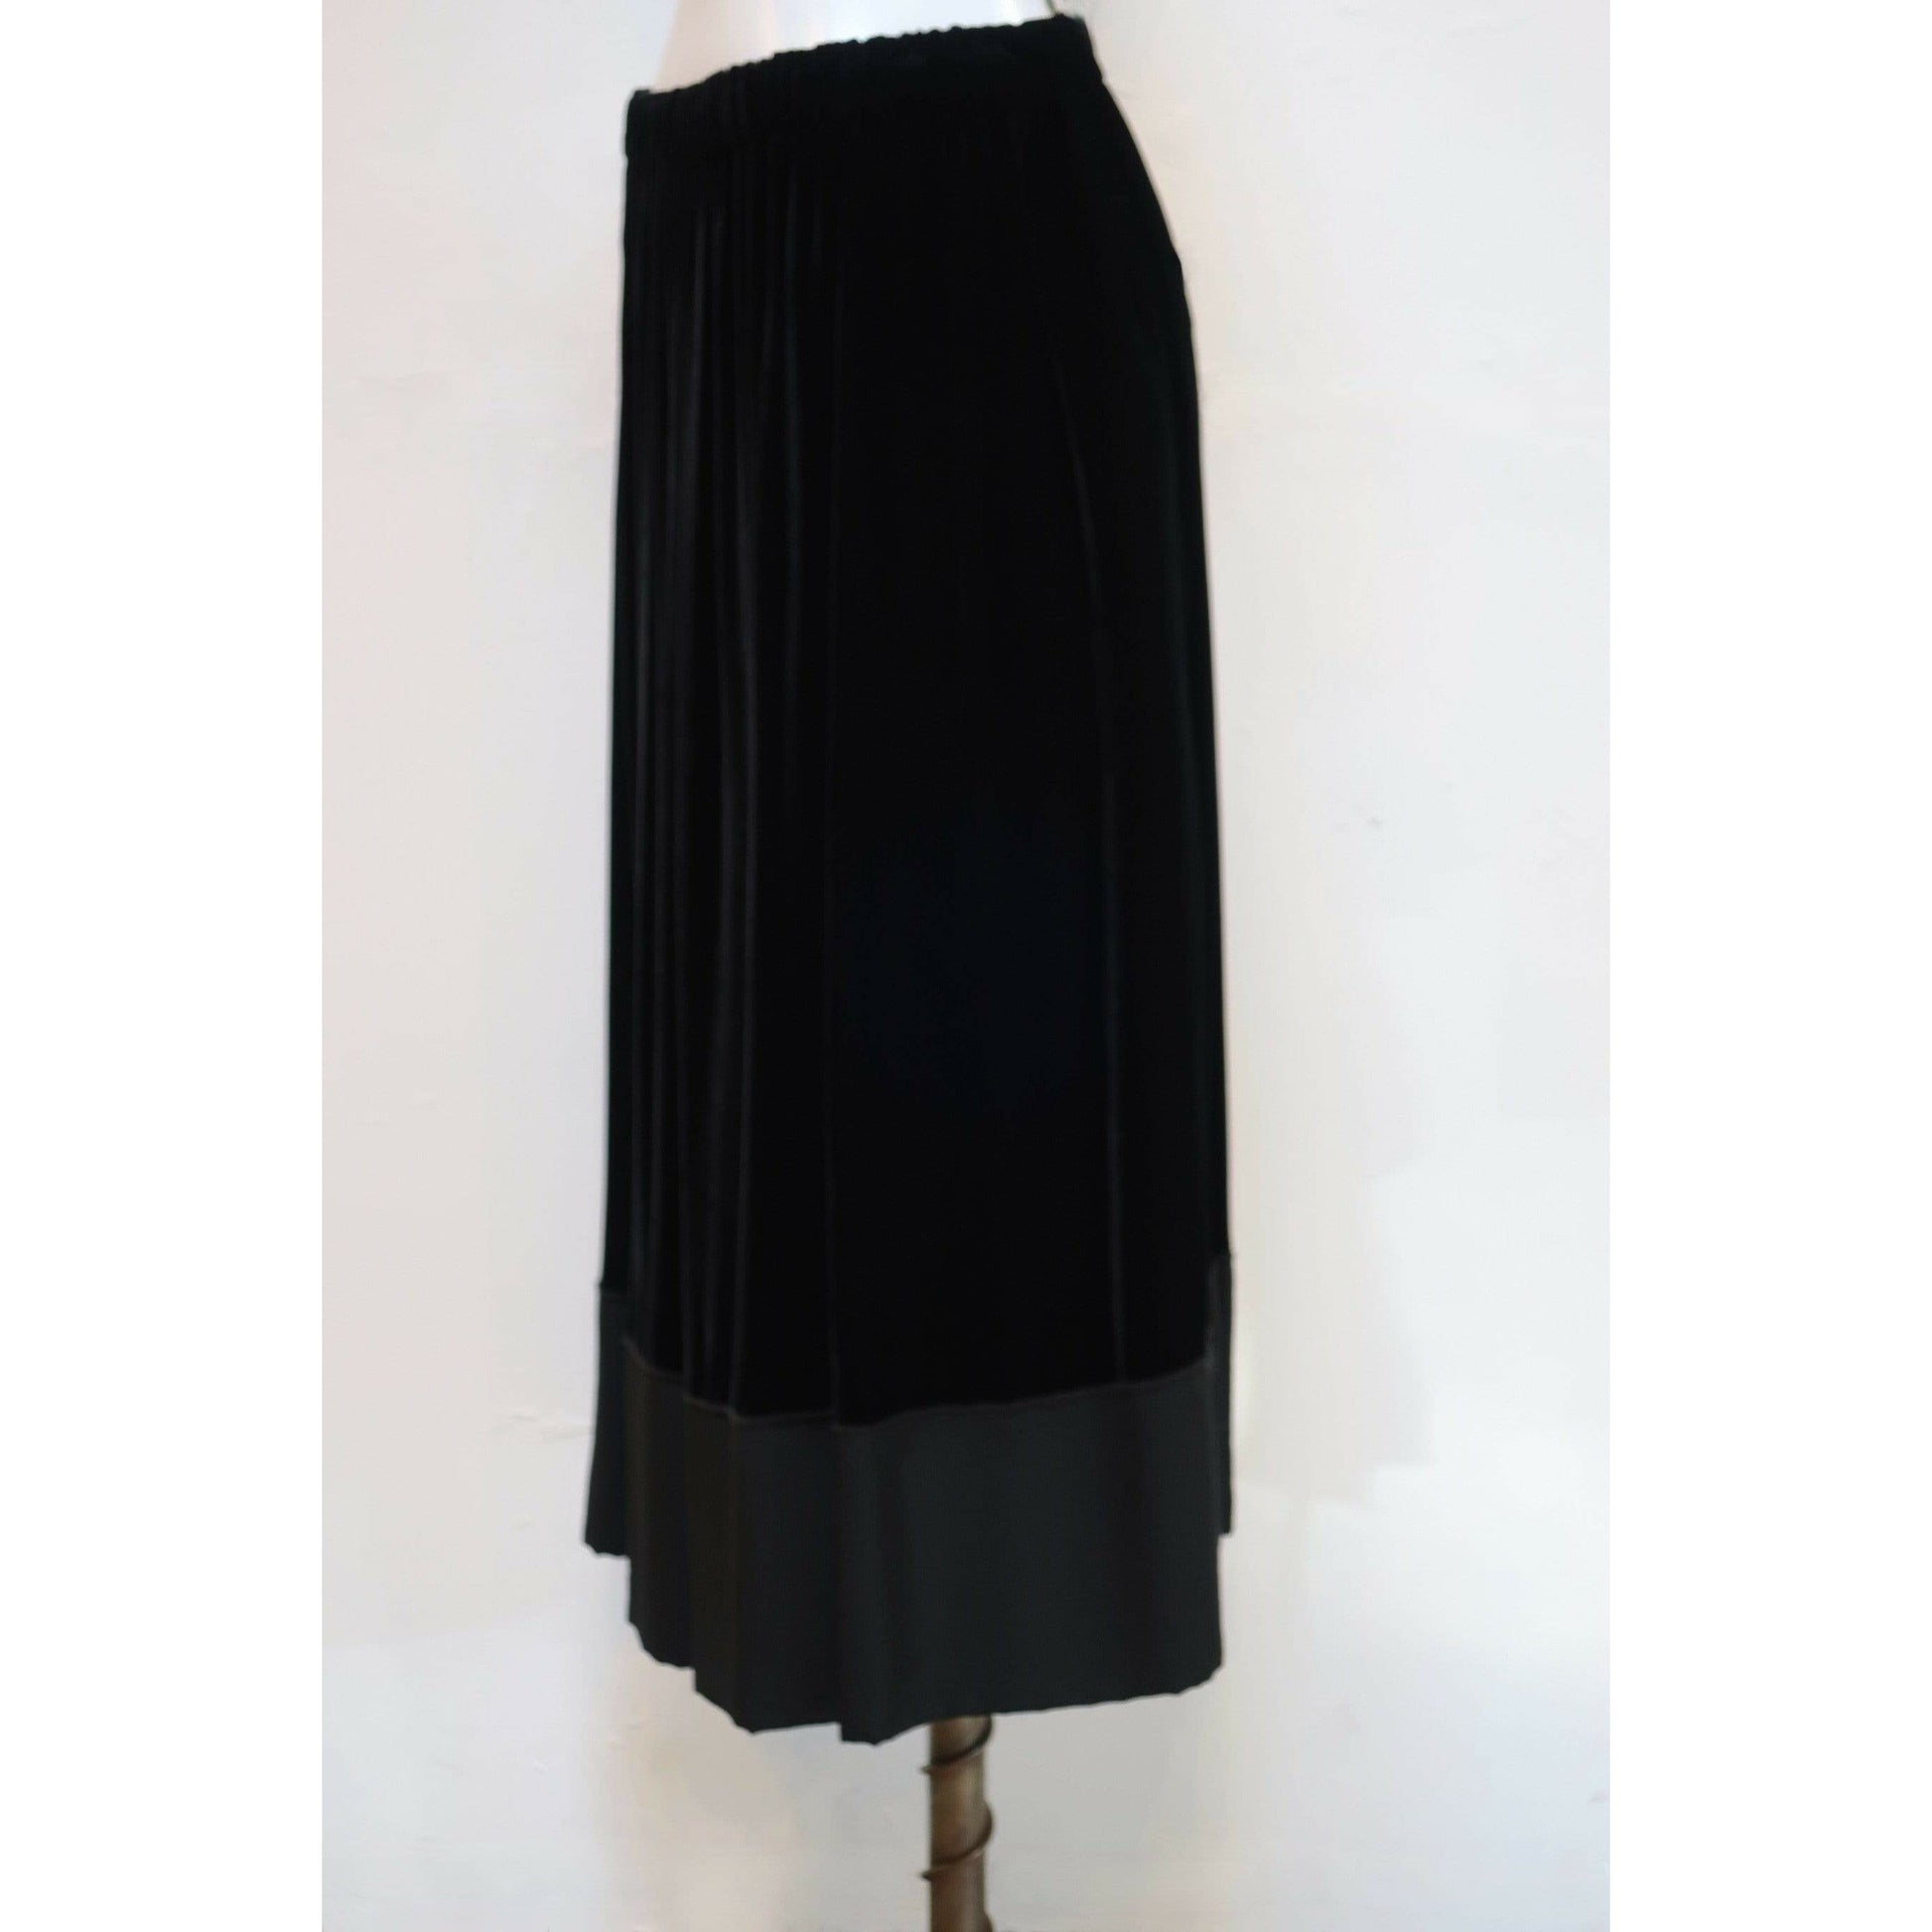 comme-des-garcons-black-velvet-drawstring-skirt Skirts Light Gray